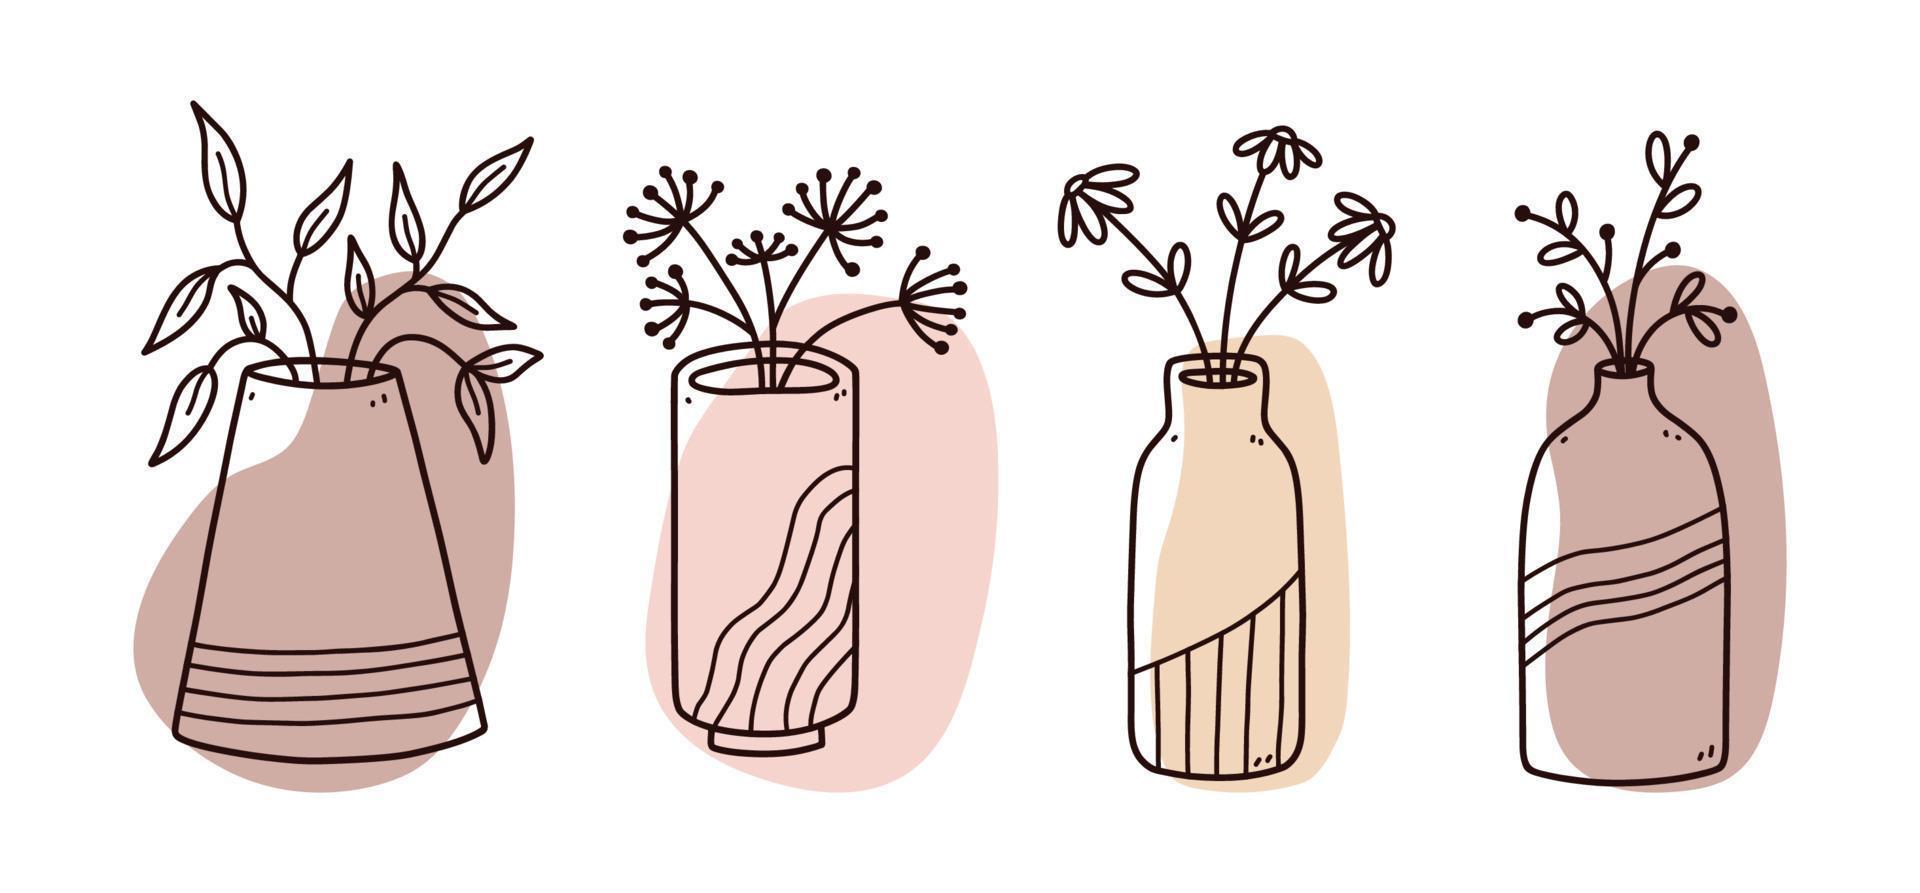 uppsättning abstrakta blommiga doodles med färg organiska former. minimalistiska vaser med blommor isolerad på vit bakgrund. vektor handritade illustration. perfekt för kort, dekorationer, logotyper, affischer.